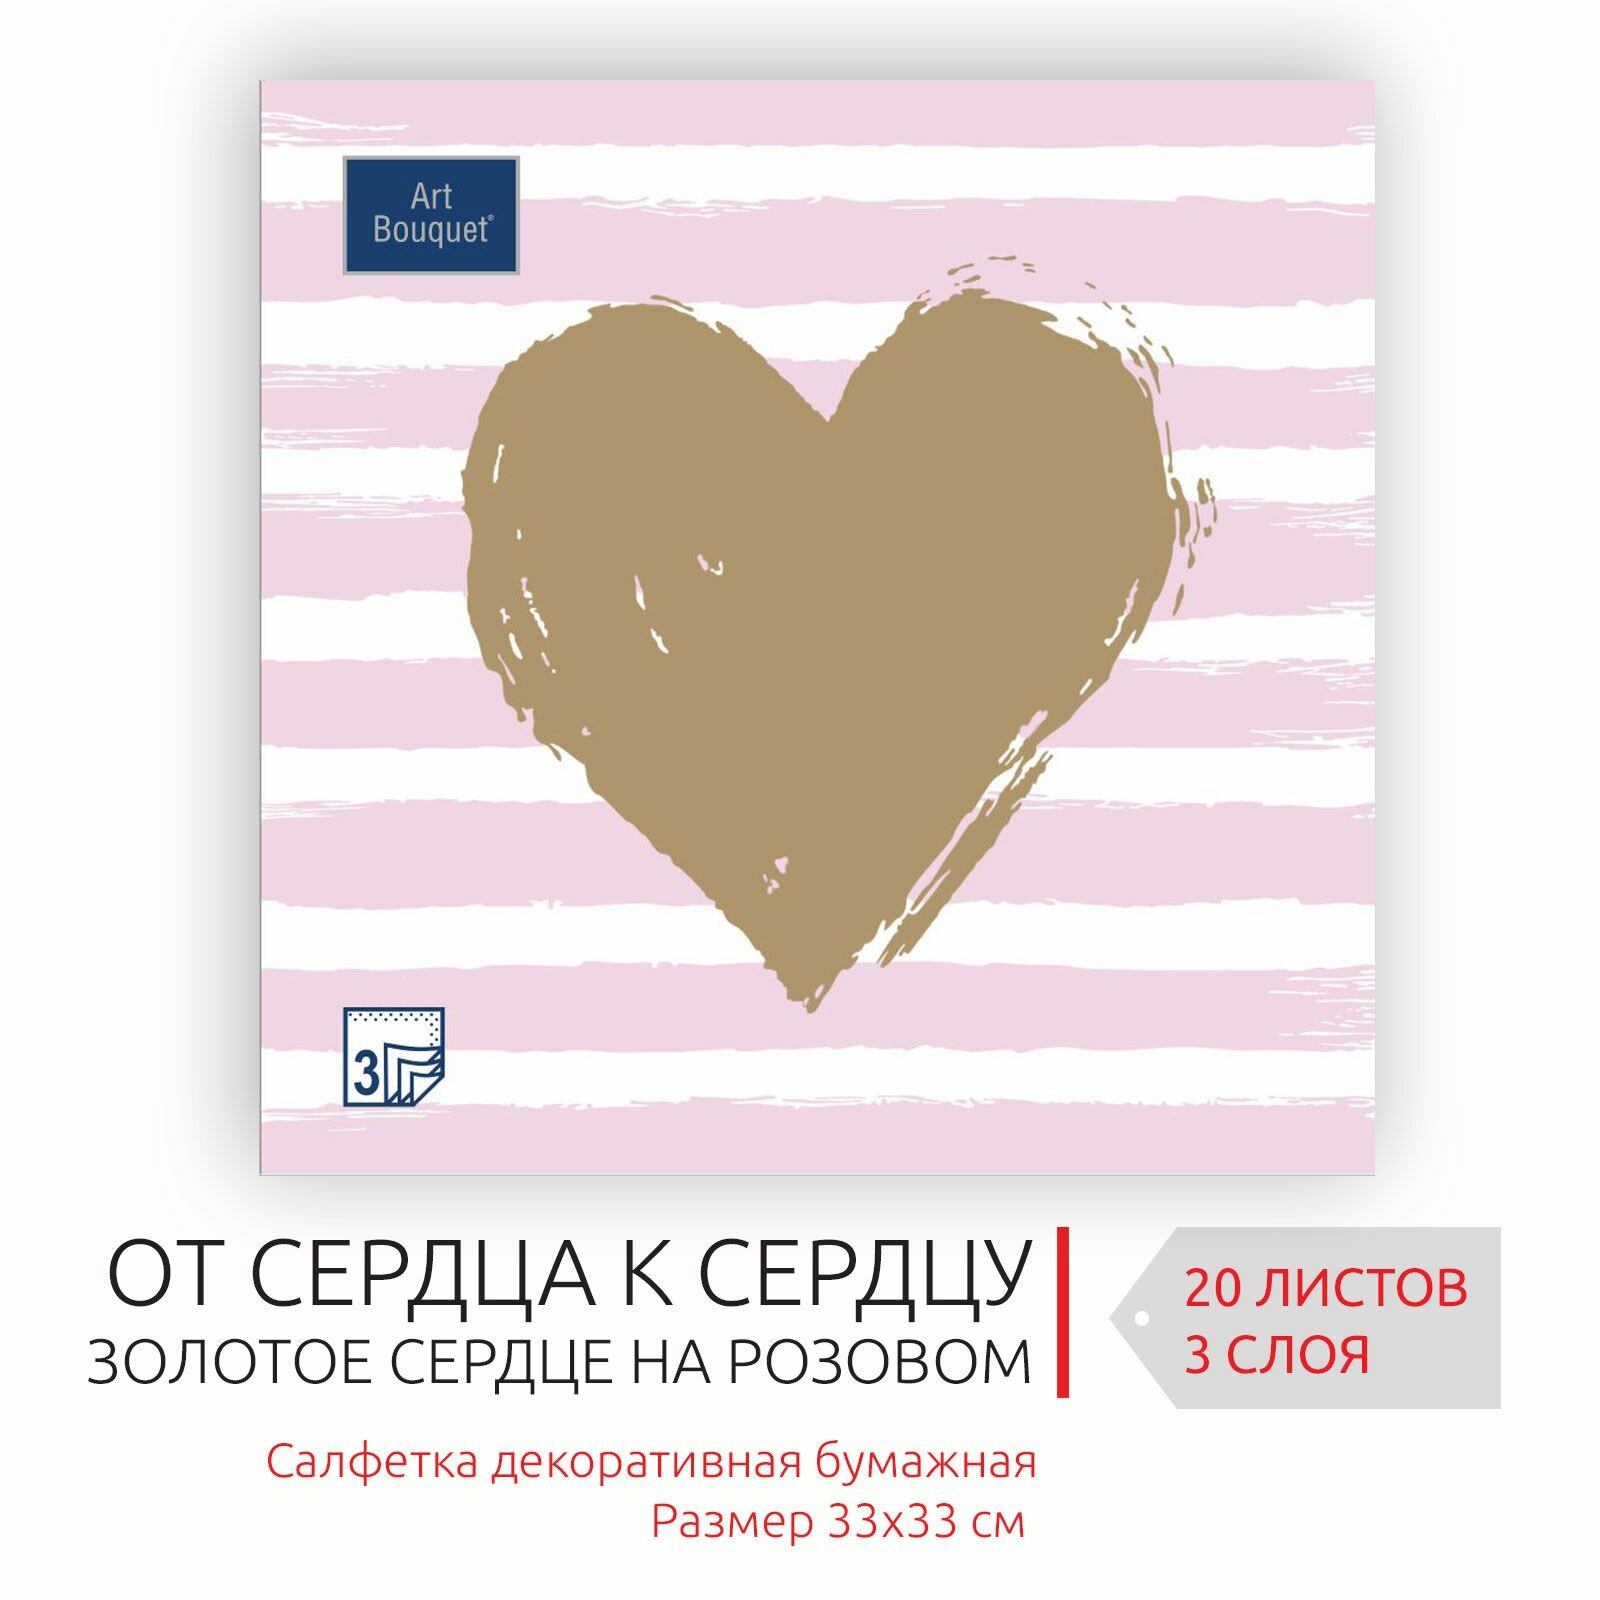 Декоративные праздничные бумажные салфетки Золотое сердце на розовом, 33х33 см, 3 слоя, 20 листов